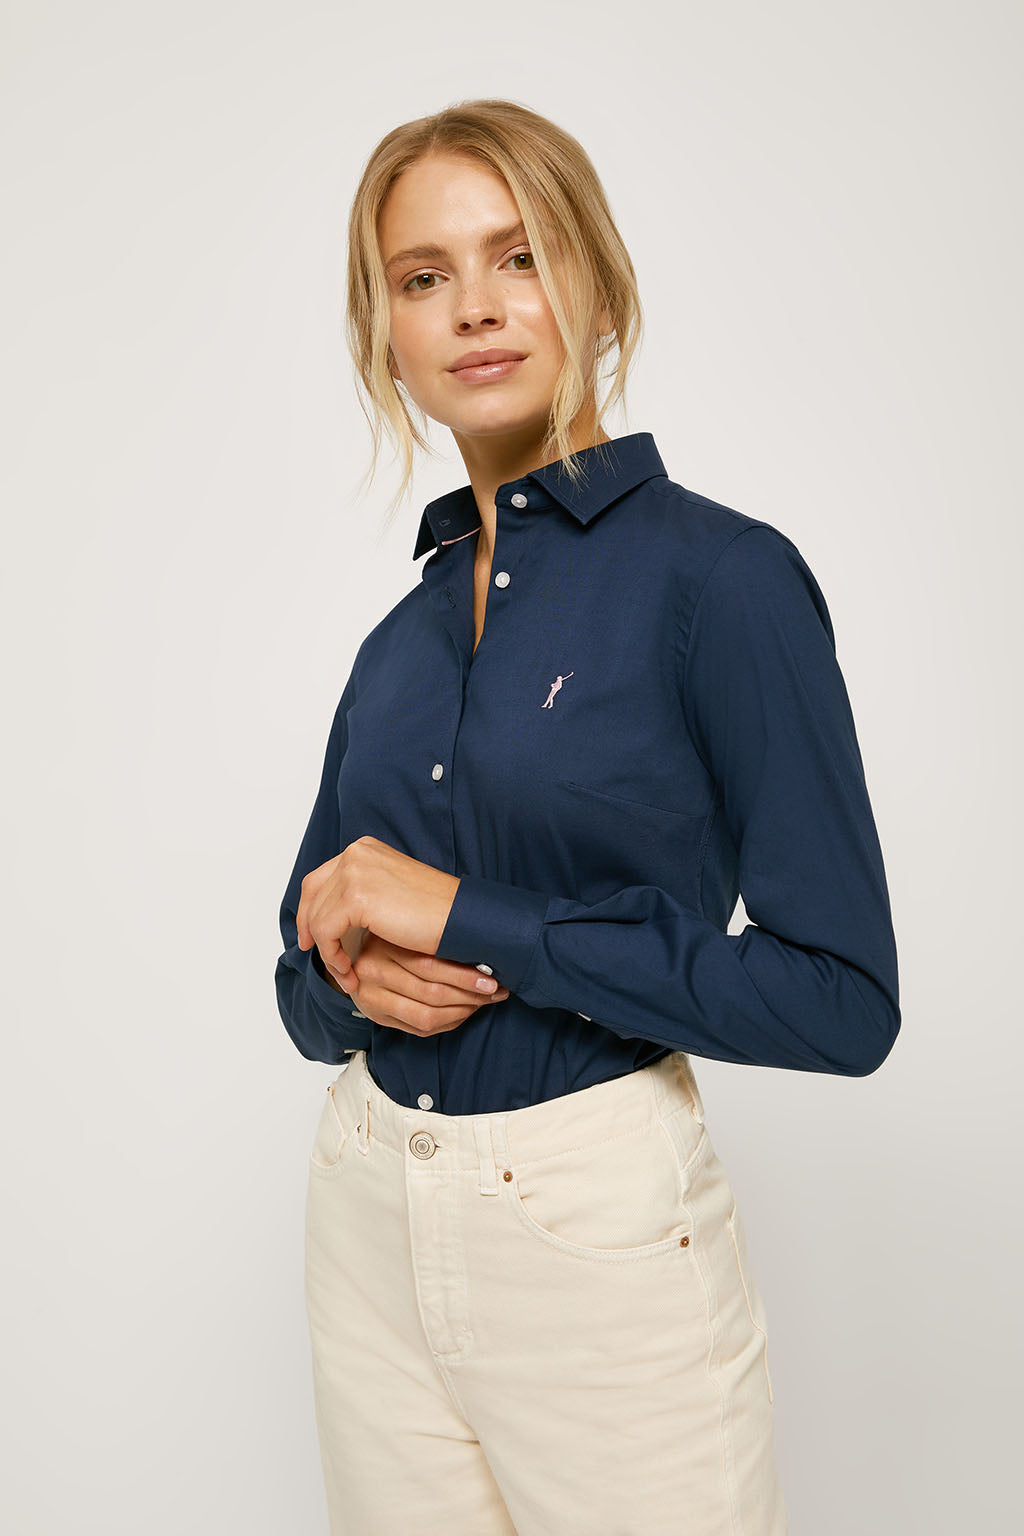 Camisa entallada azul marino de popelín logo bordado – Polo Club